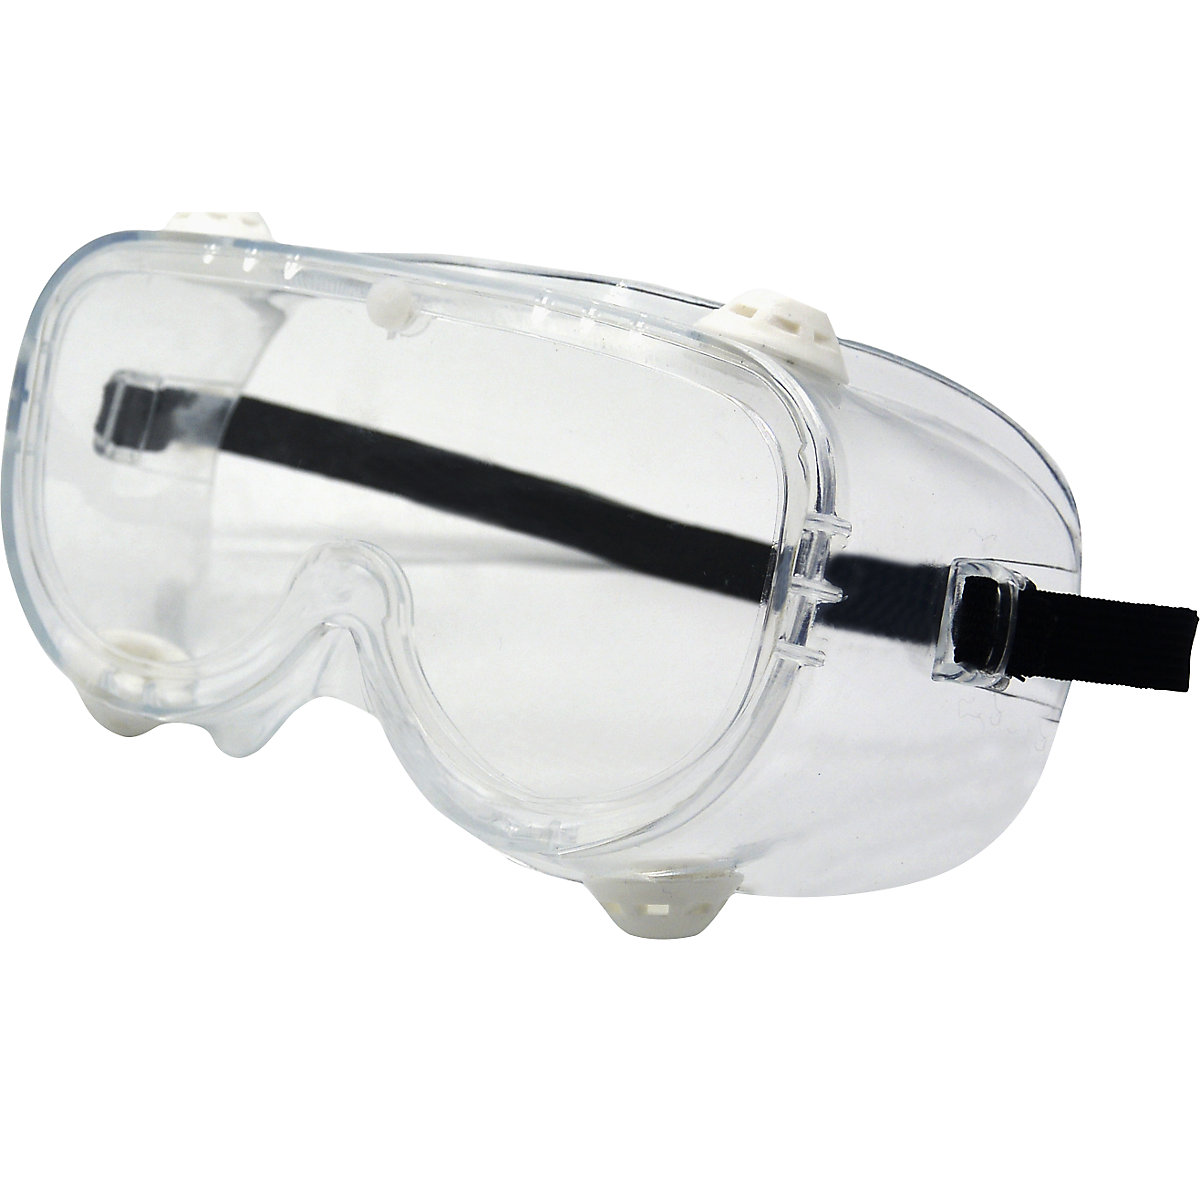 EN166 10 x Sicherheitsbrille Schutzbrille Augenschutz Klarsicht Kratzfest 